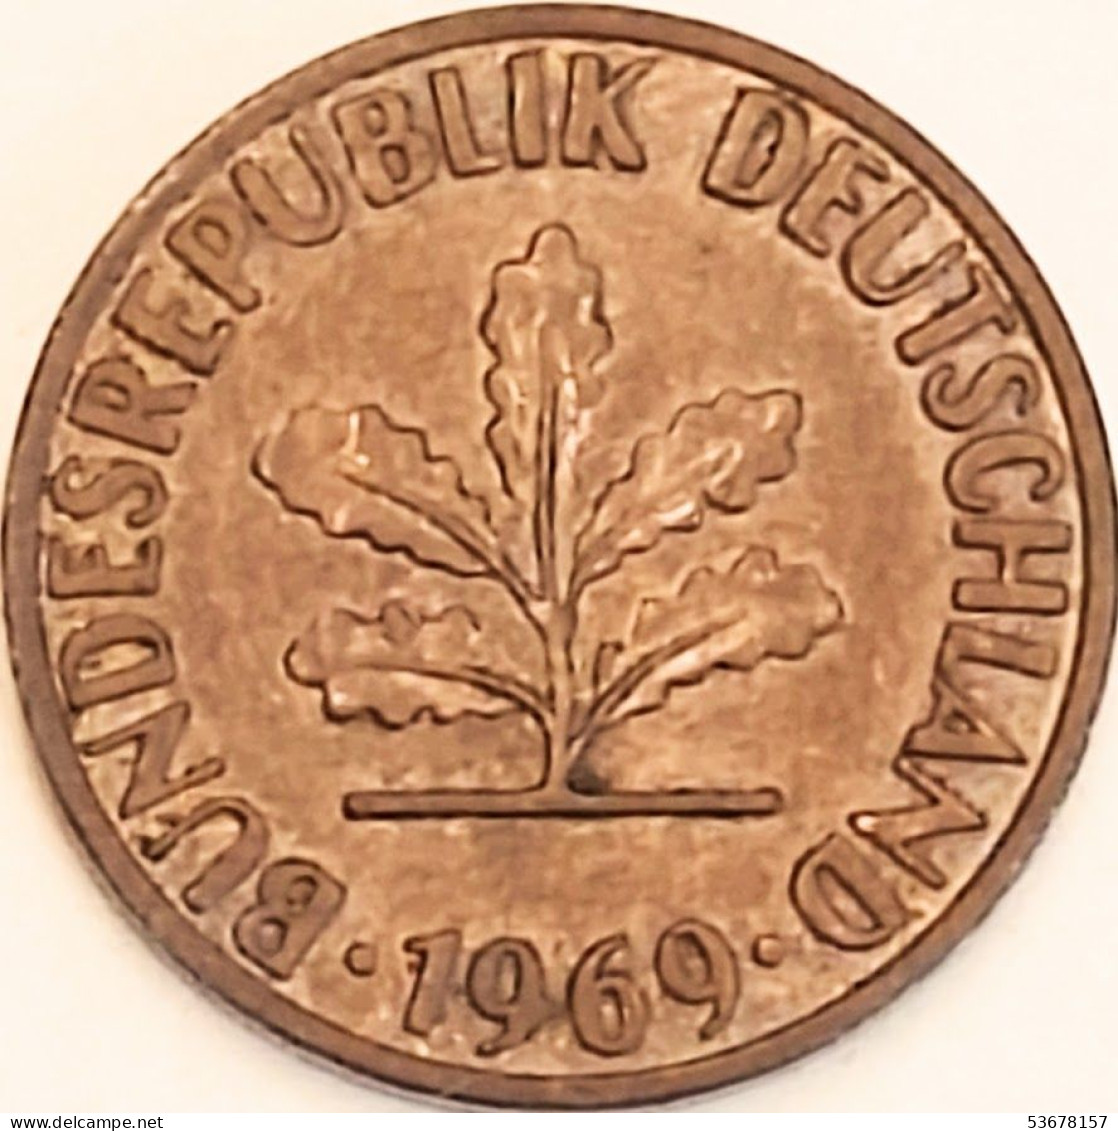 Germany Federal Republic - Pfennig 1969 D, KM# 105 (#4454) - 1 Pfennig